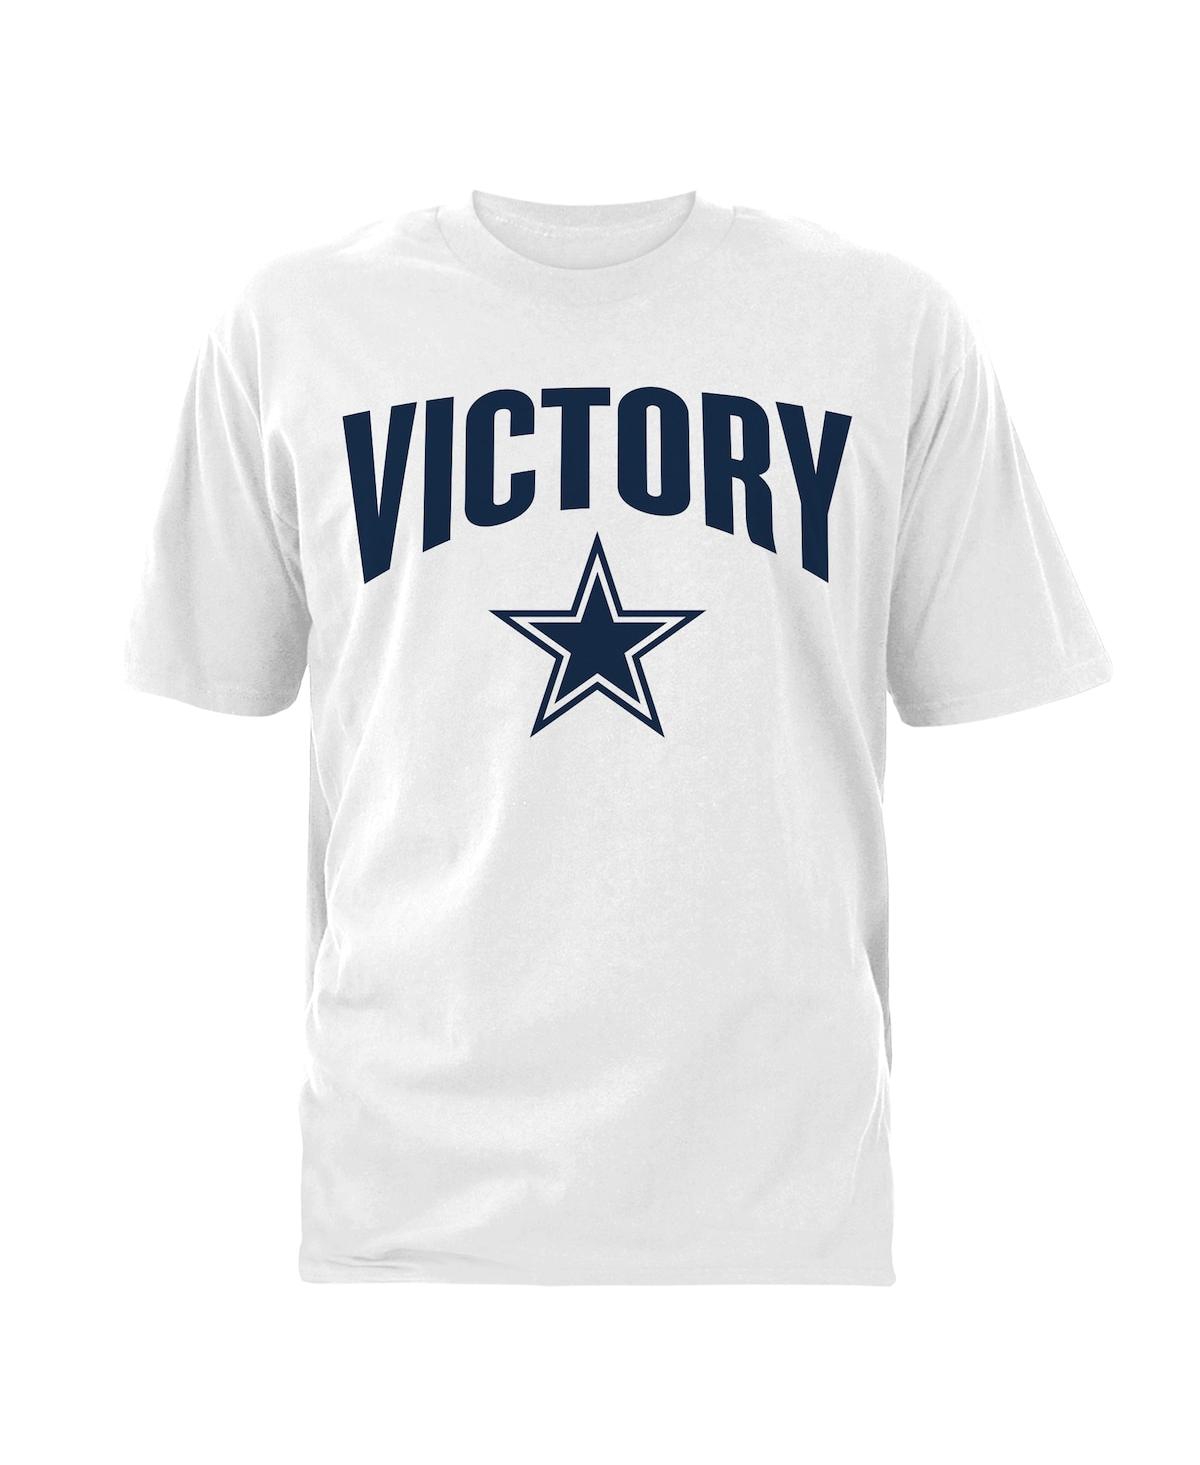 Men's White Dallas Cowboys Victory T-shirt - White